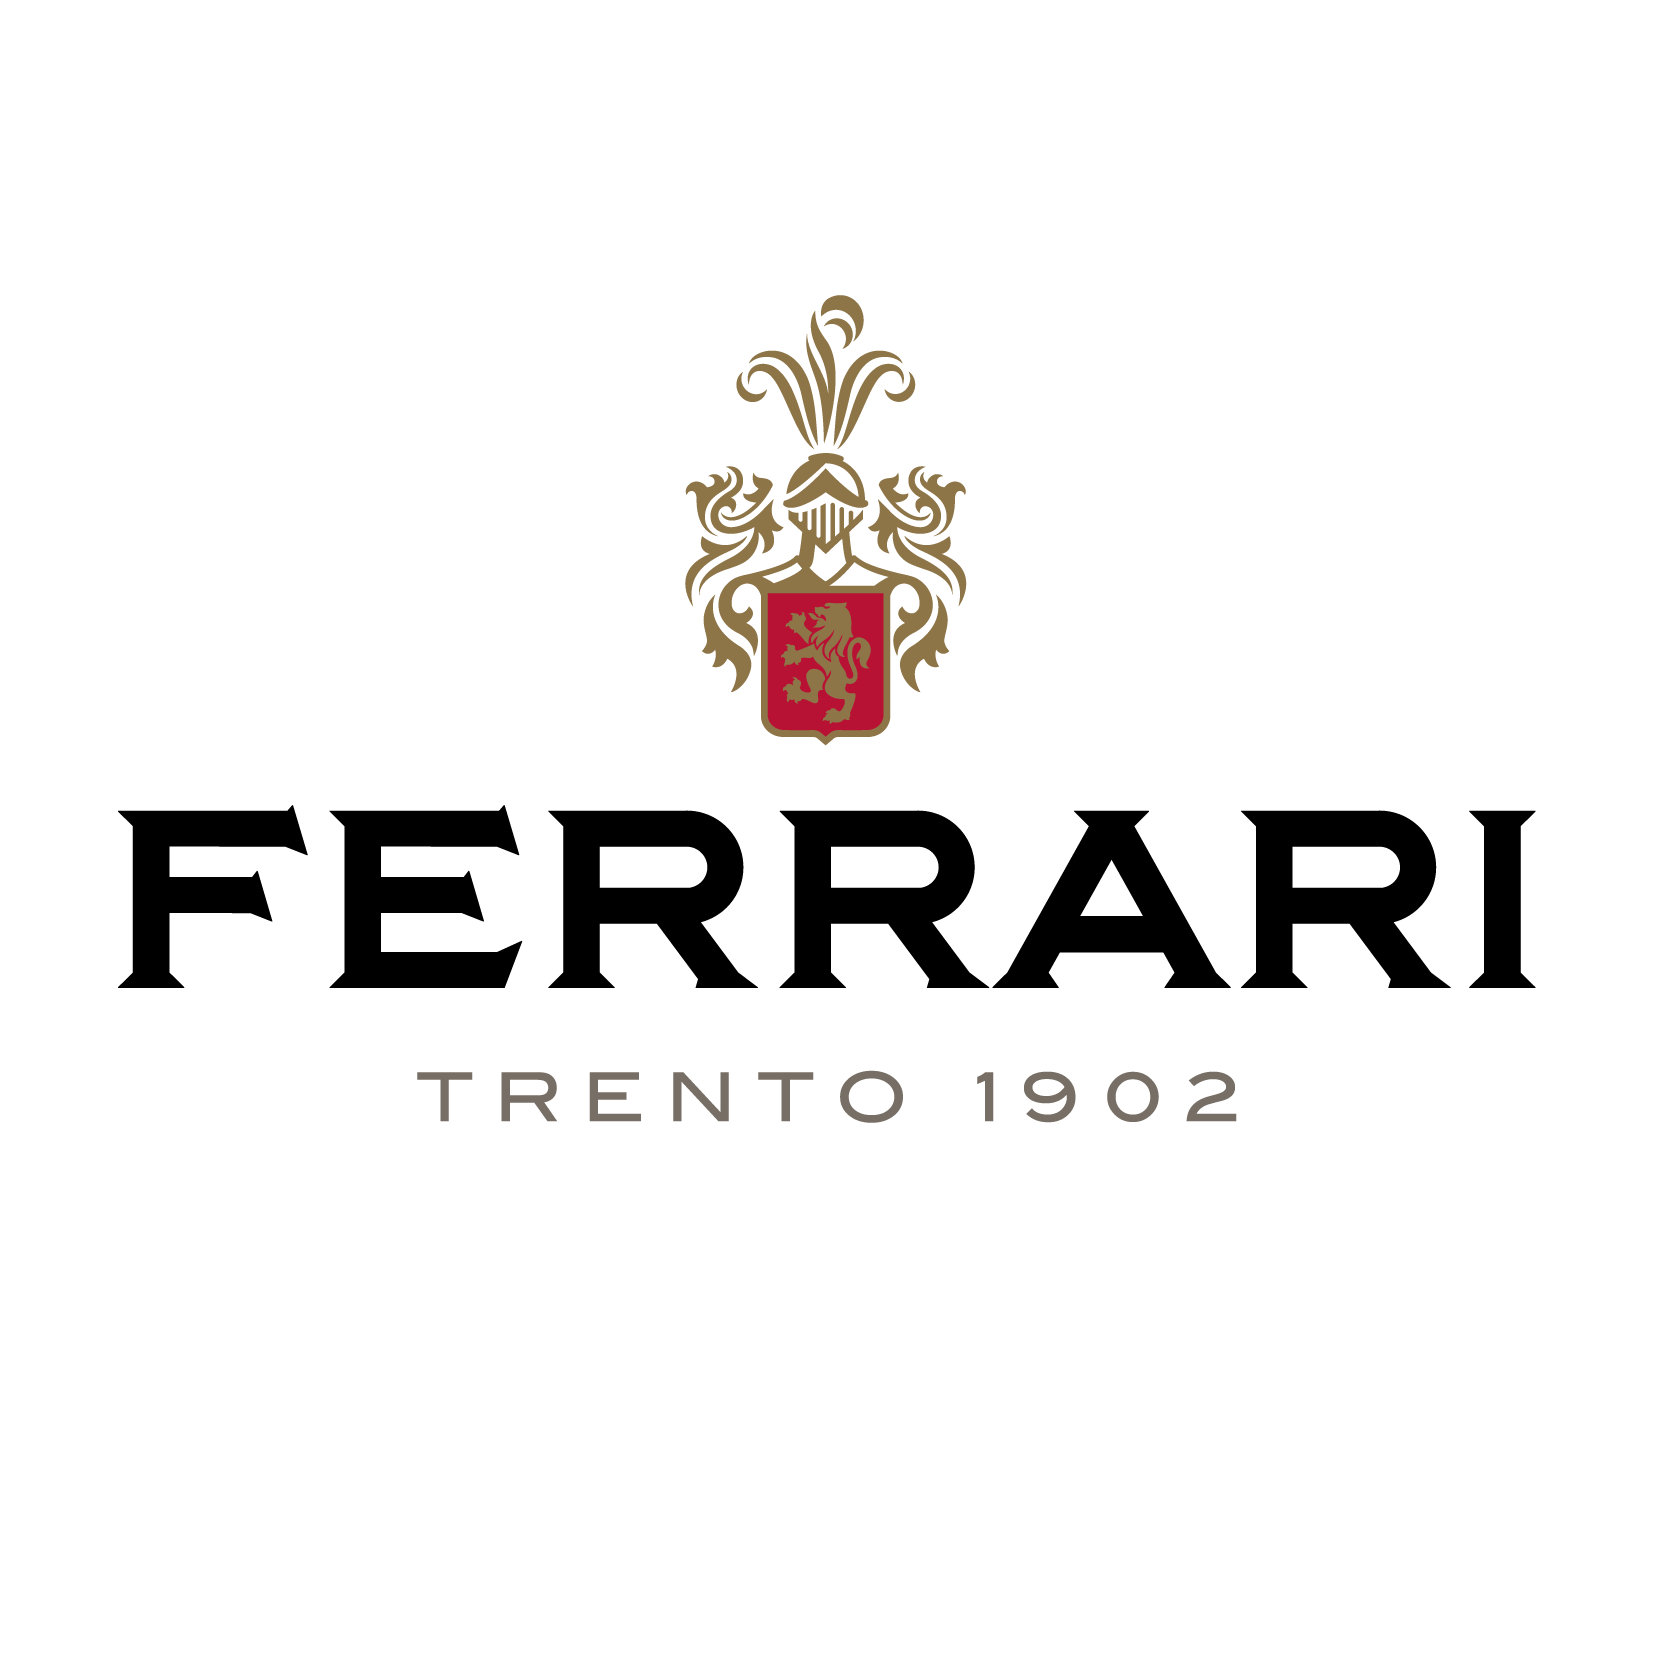 Ferrari Trento vini in offerta scontati fino al 60% in meno su vinolog24.com